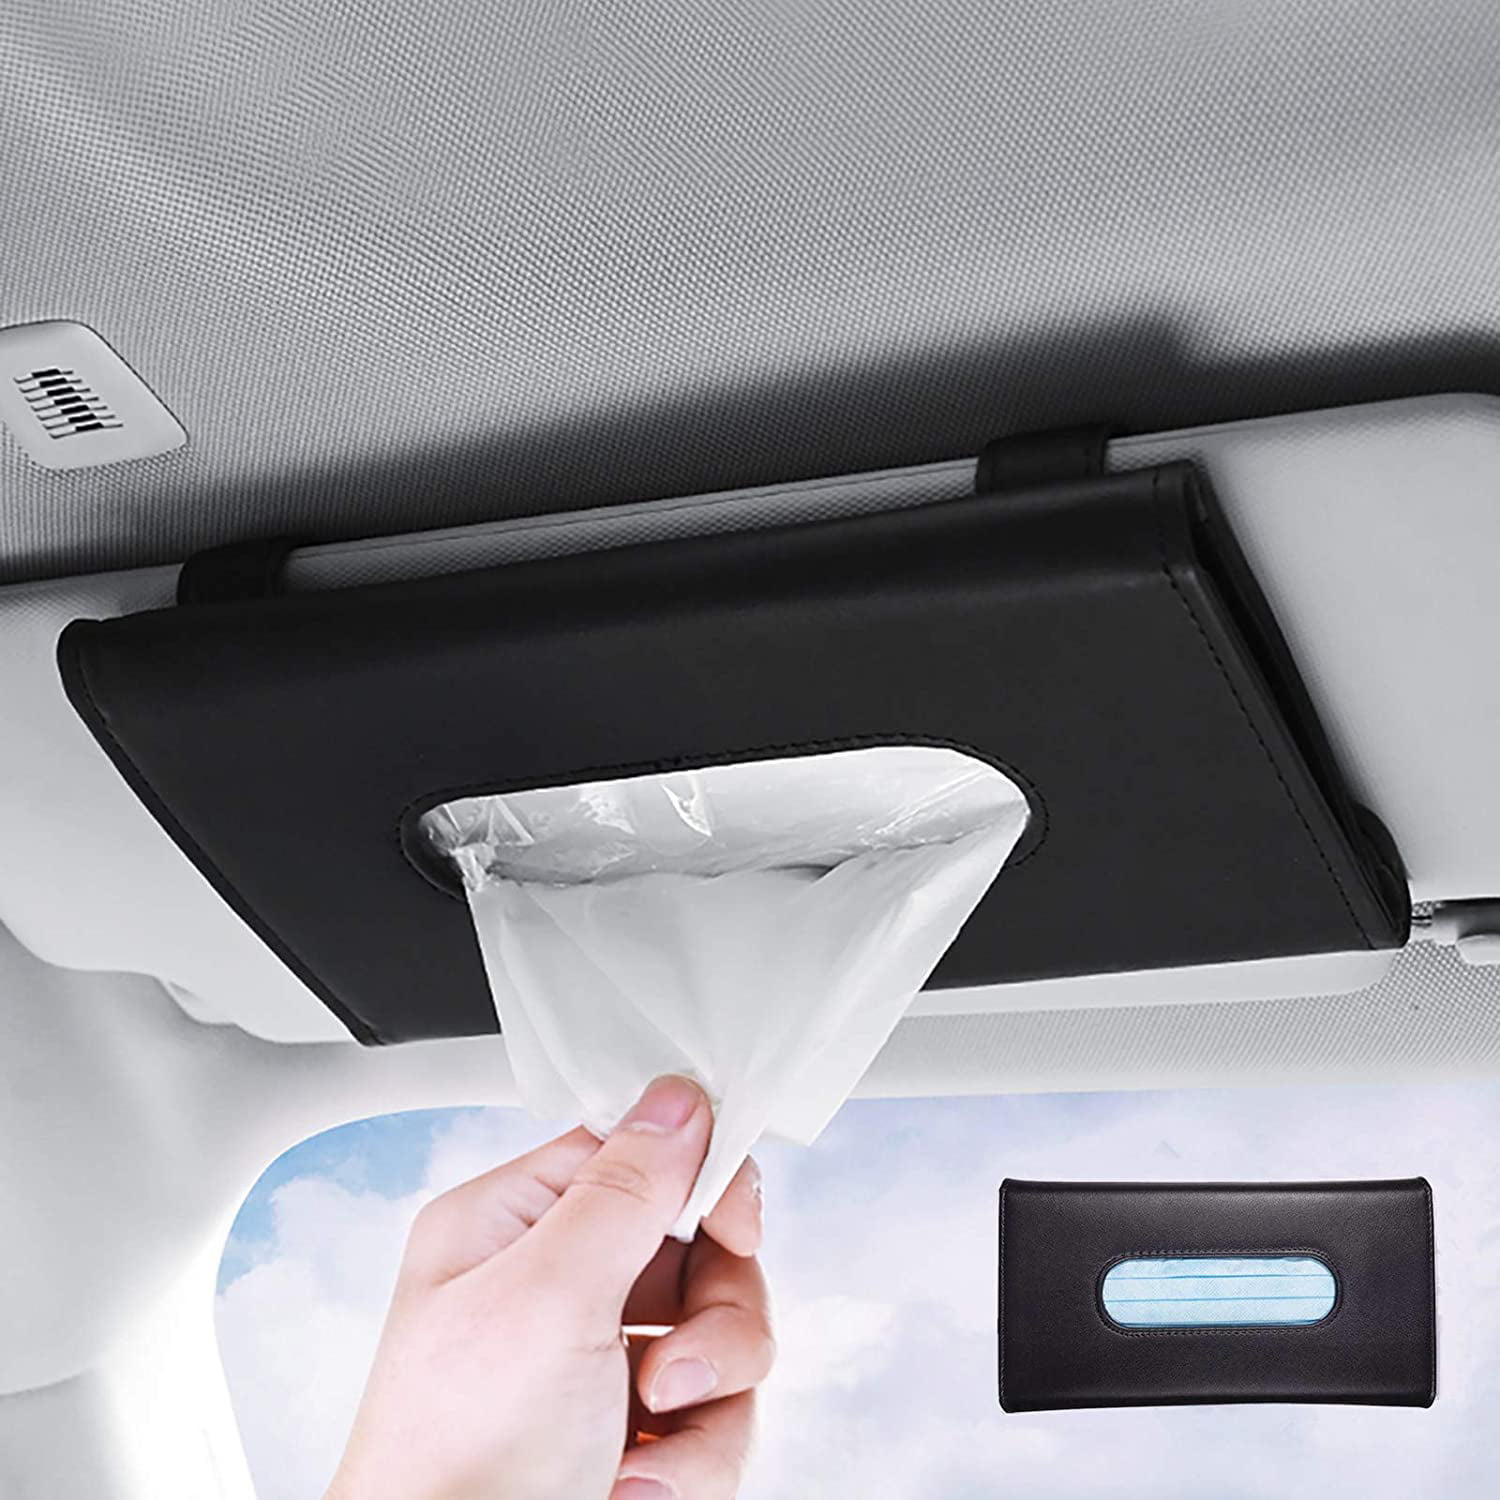 Black Car Tissue Holder Car Sun Visor Napkin Holder Tissue Box Holder Storage Cases Face Mask Dispenser Car Assecories for Car Seatback Sunroof